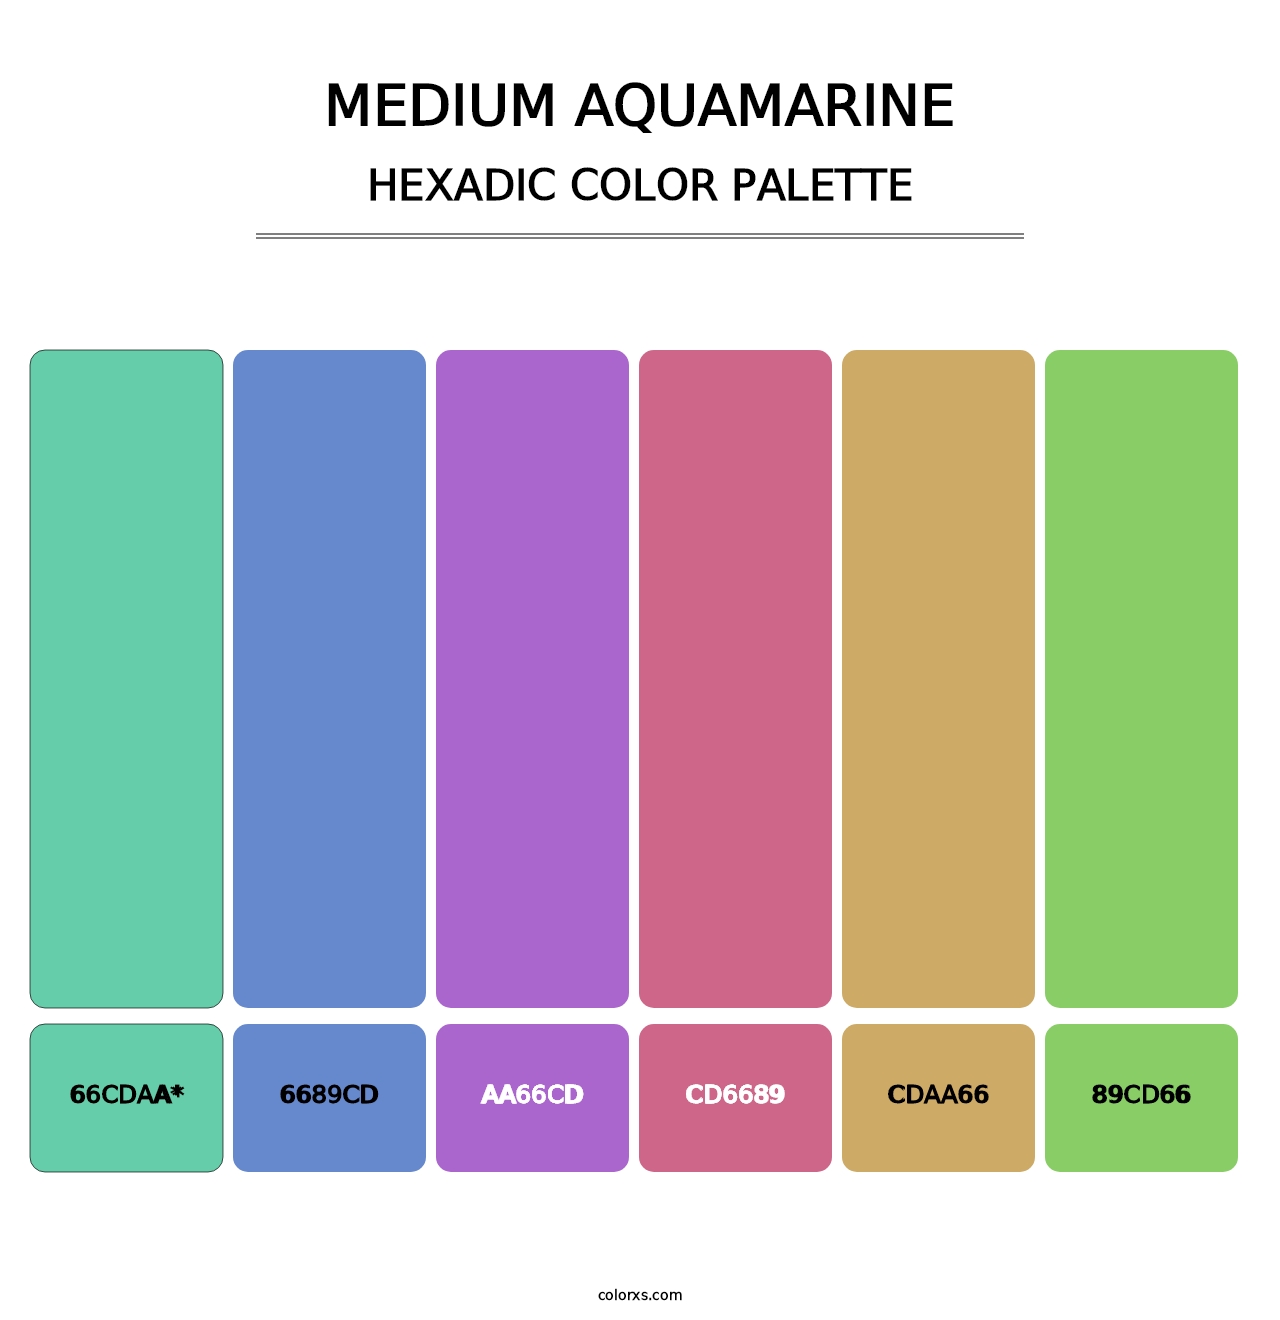 Medium Aquamarine - Hexadic Color Palette